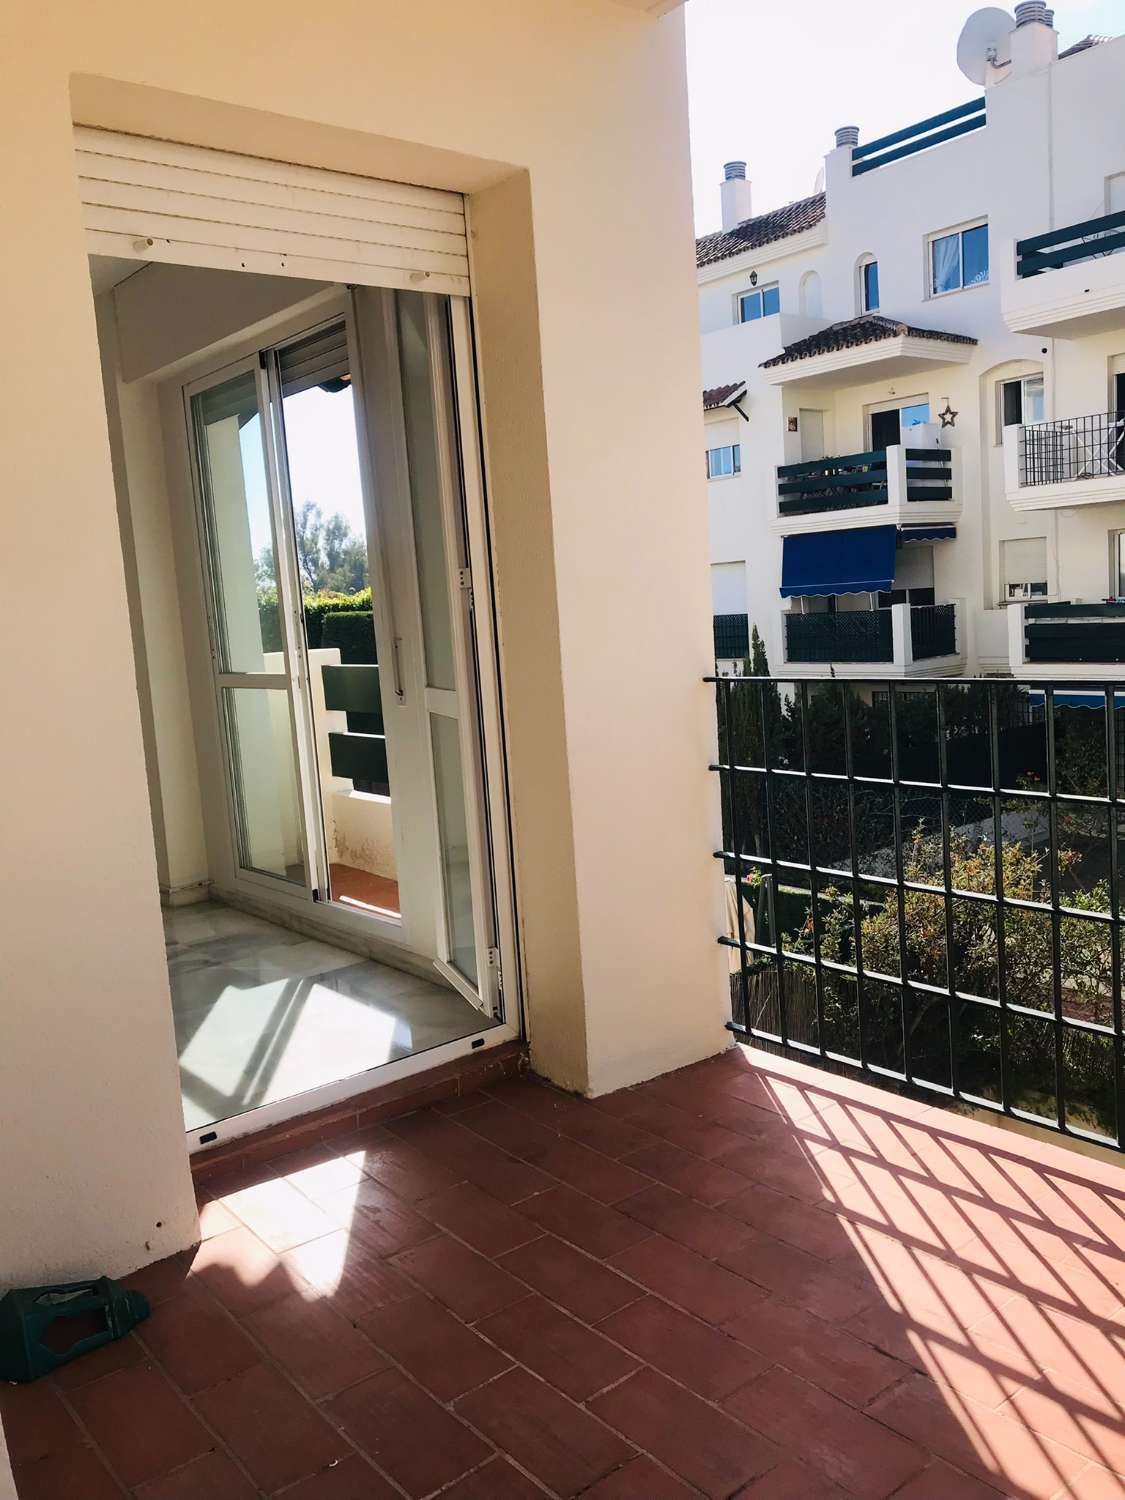 Apartament amb encant en venda. Molt bona ubicació a prop de Puerto Banús, Marbella.